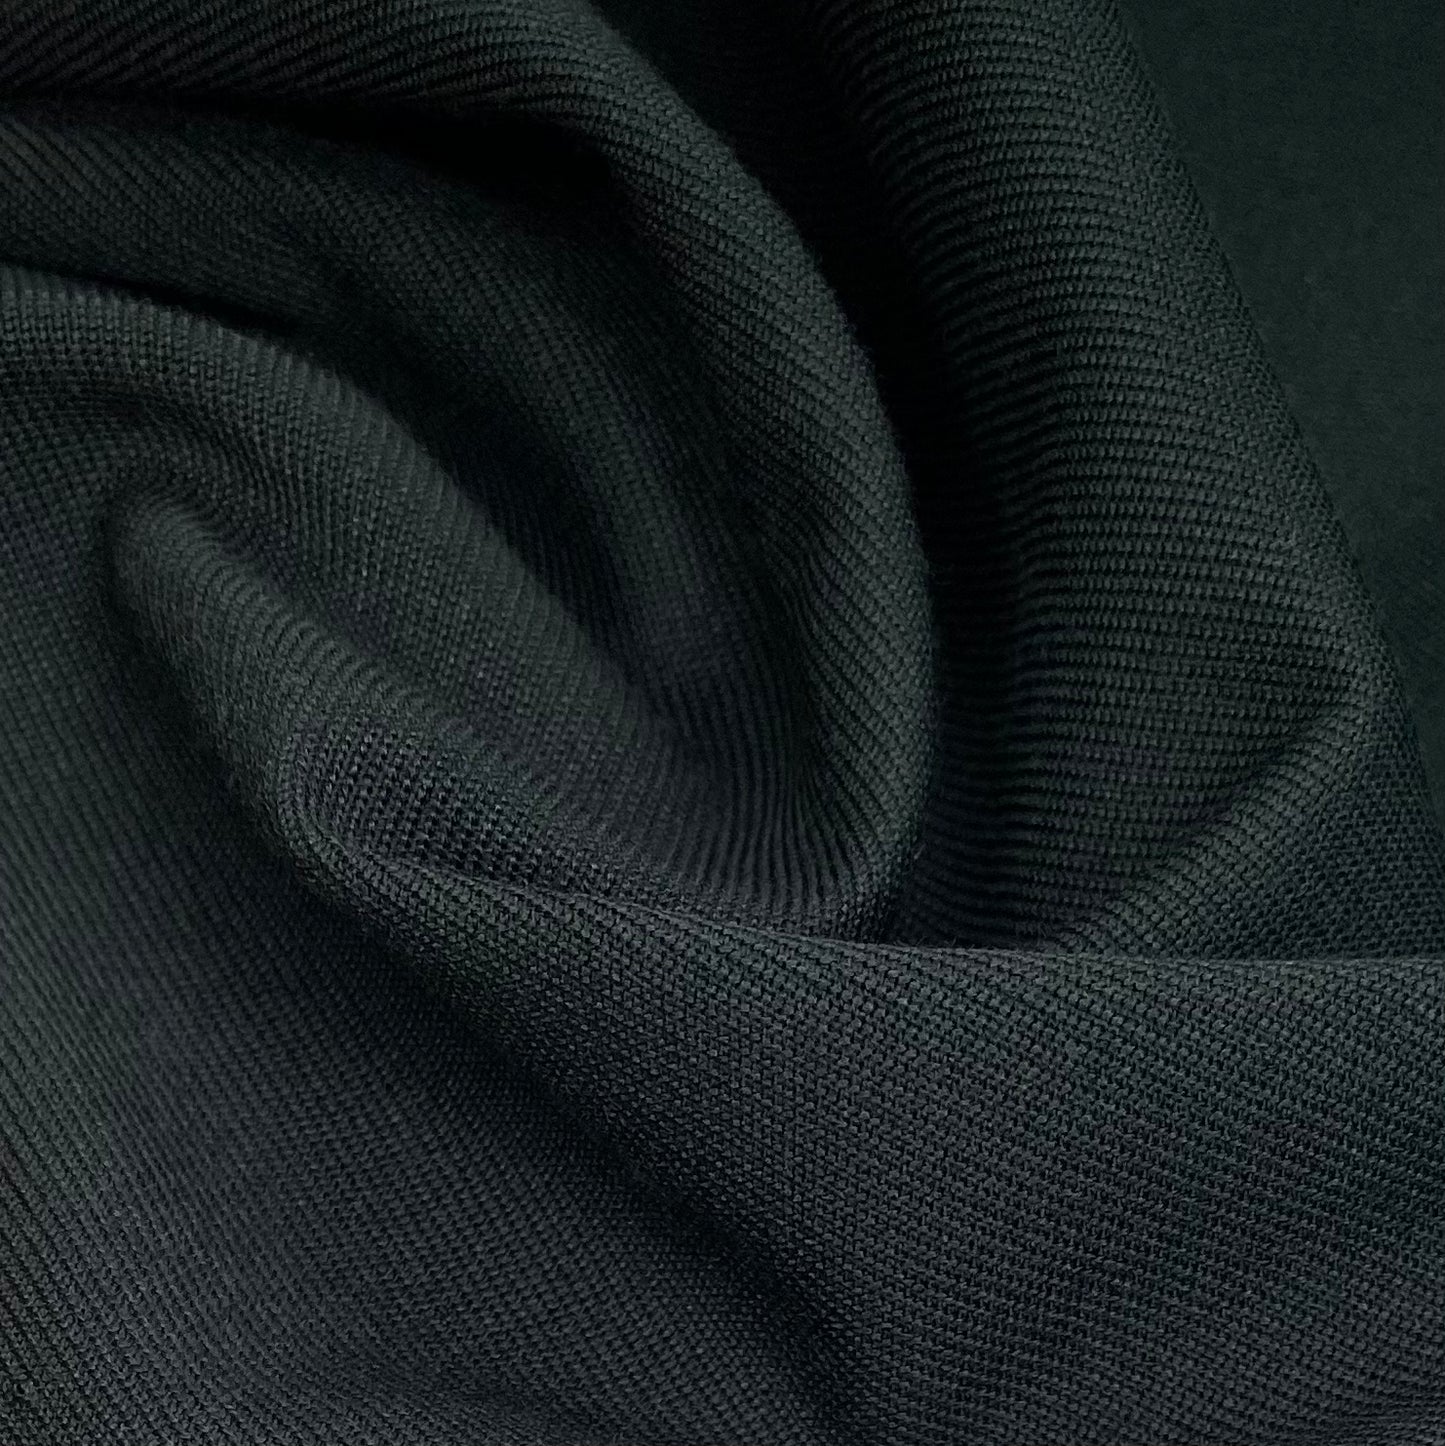 Cotton/Polyester Twill Canvas - 8oz - Dark Green